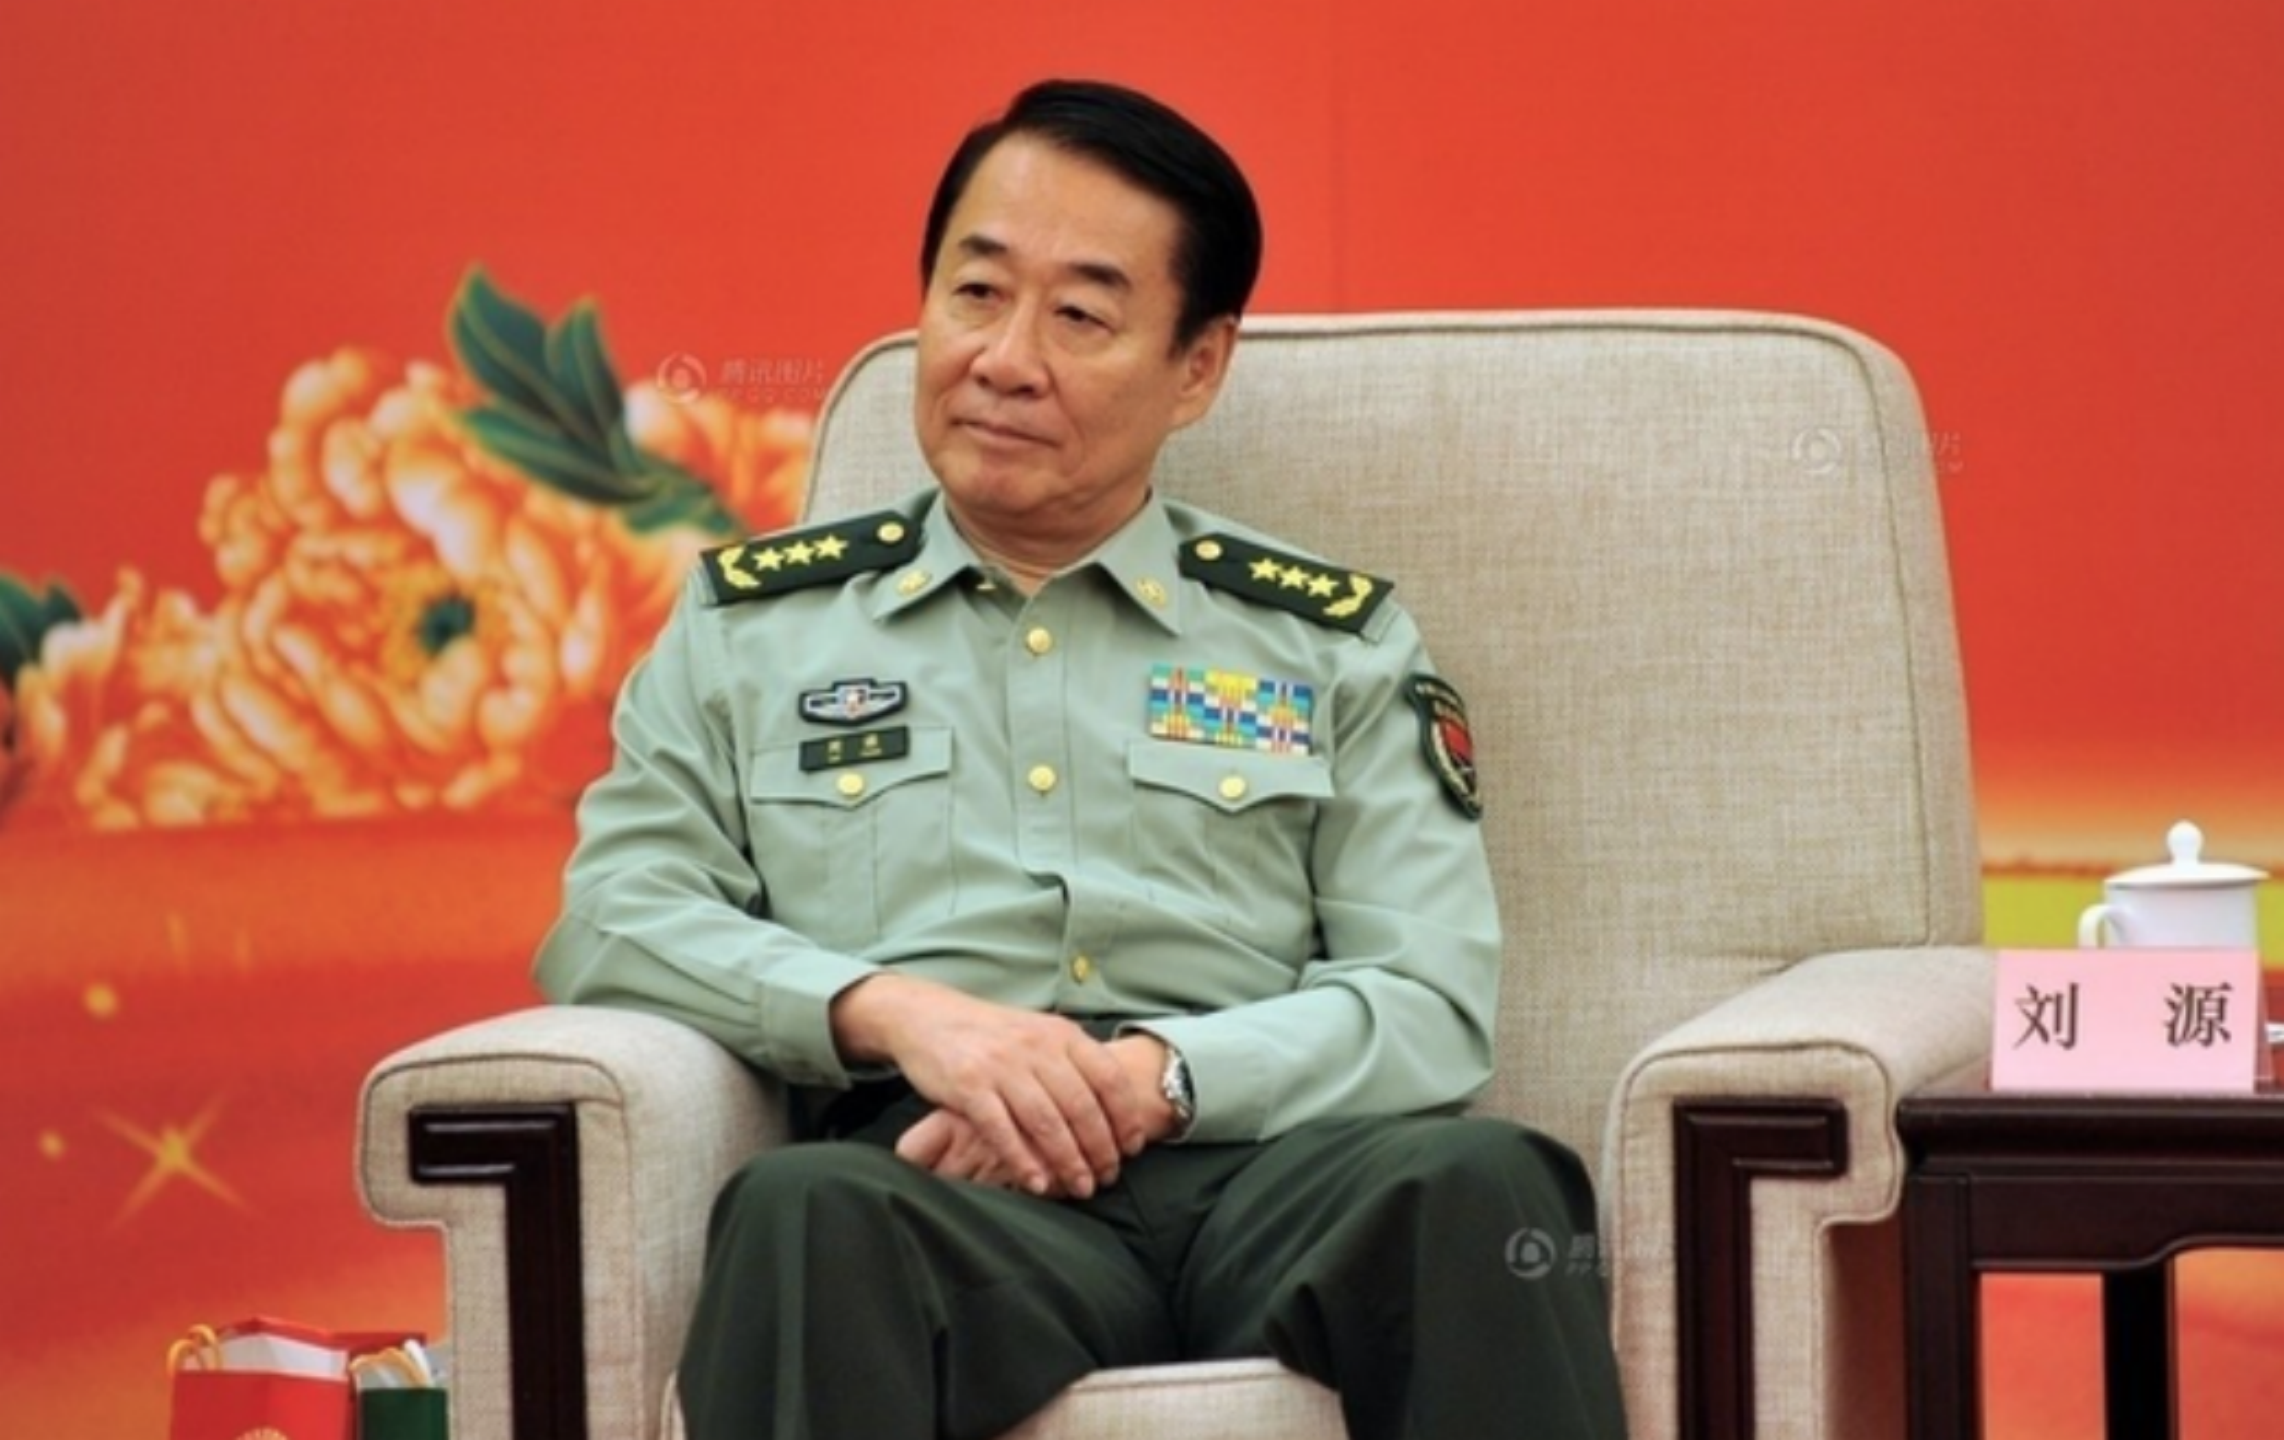 刘源:王光美最小的儿子,曾任河南副省长,58岁是上将,如今70岁